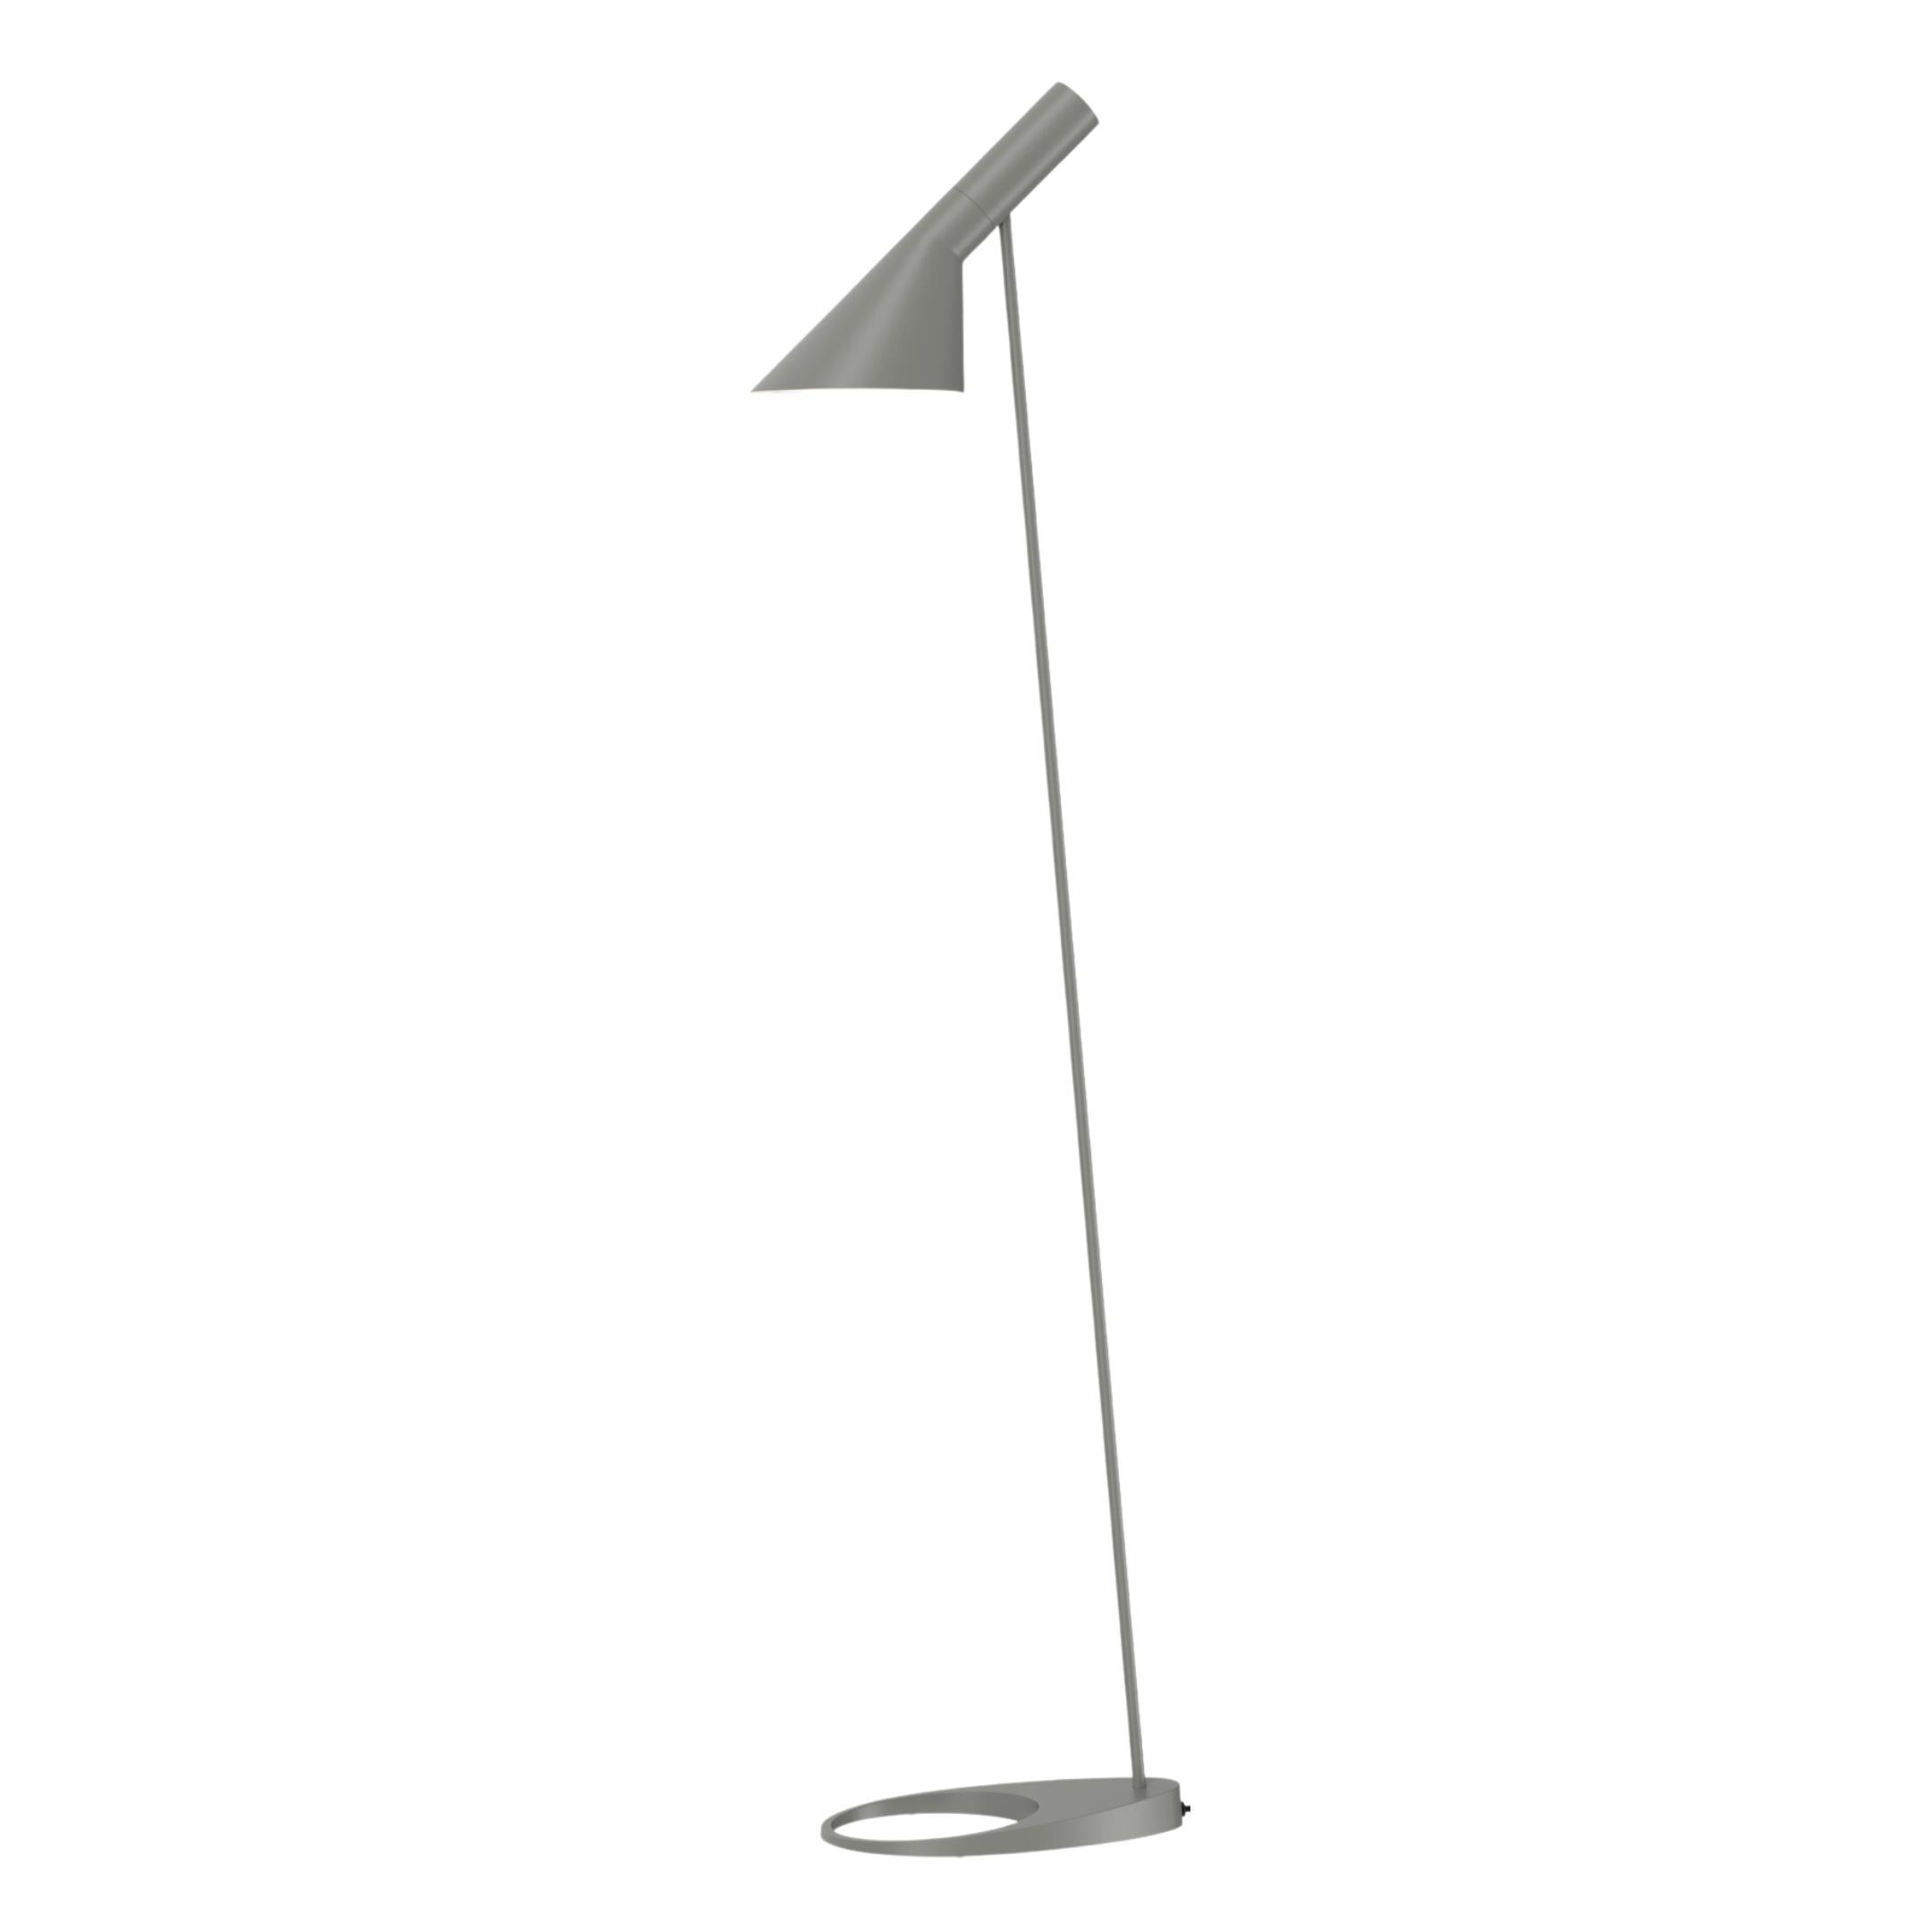 Arne Jacobsen AJ Floor Lamp in White for Louis Poulsen For Sale 4